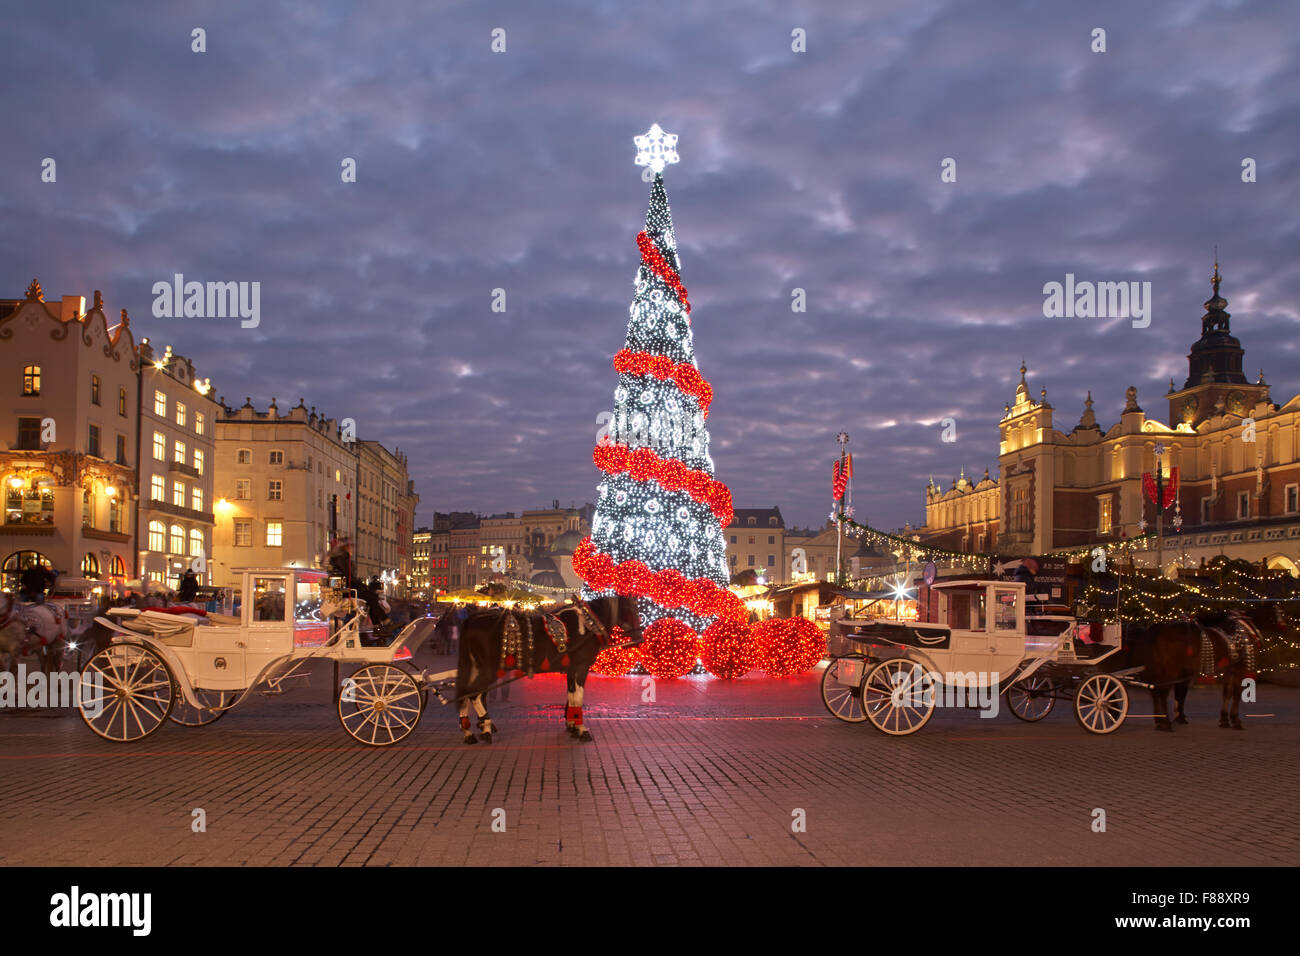 Polonia Cracovia principale Piazza Rynek Glowny panno Hall Mercatino di Natale di notte Foto Stock